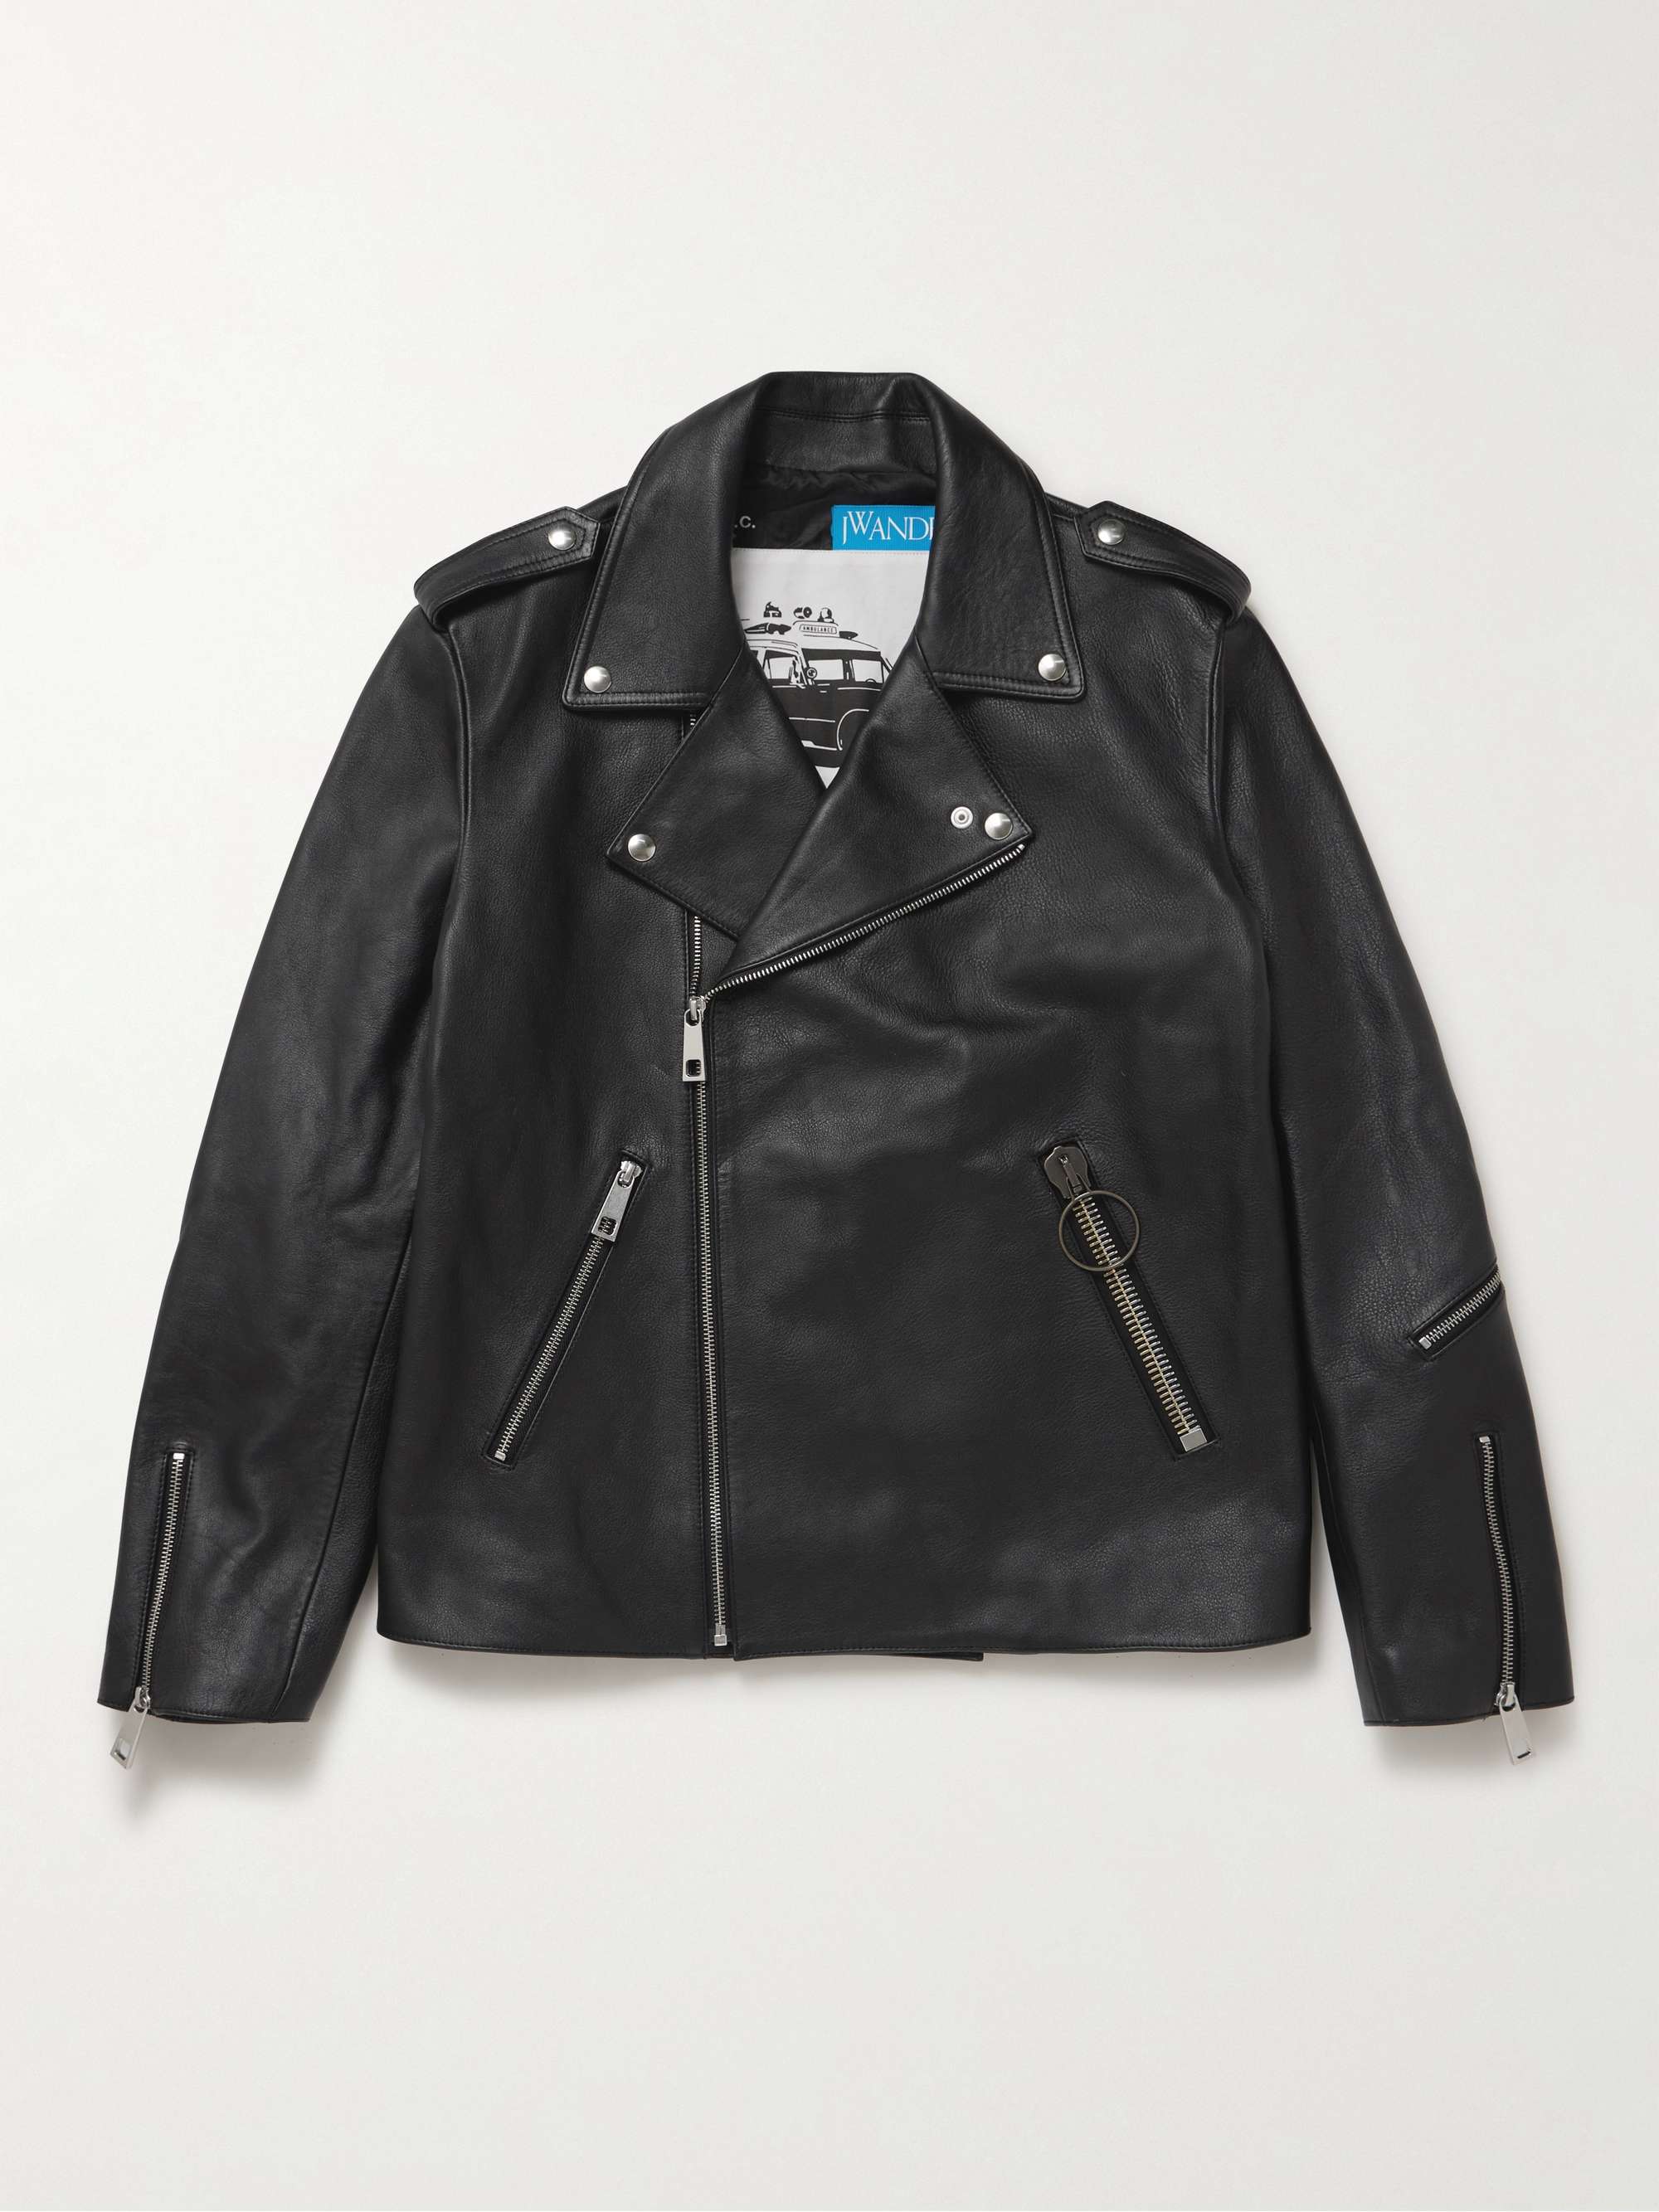 A.P.C. + JW Anderson Morgan Leather Biker Jacket for Men | MR PORTER